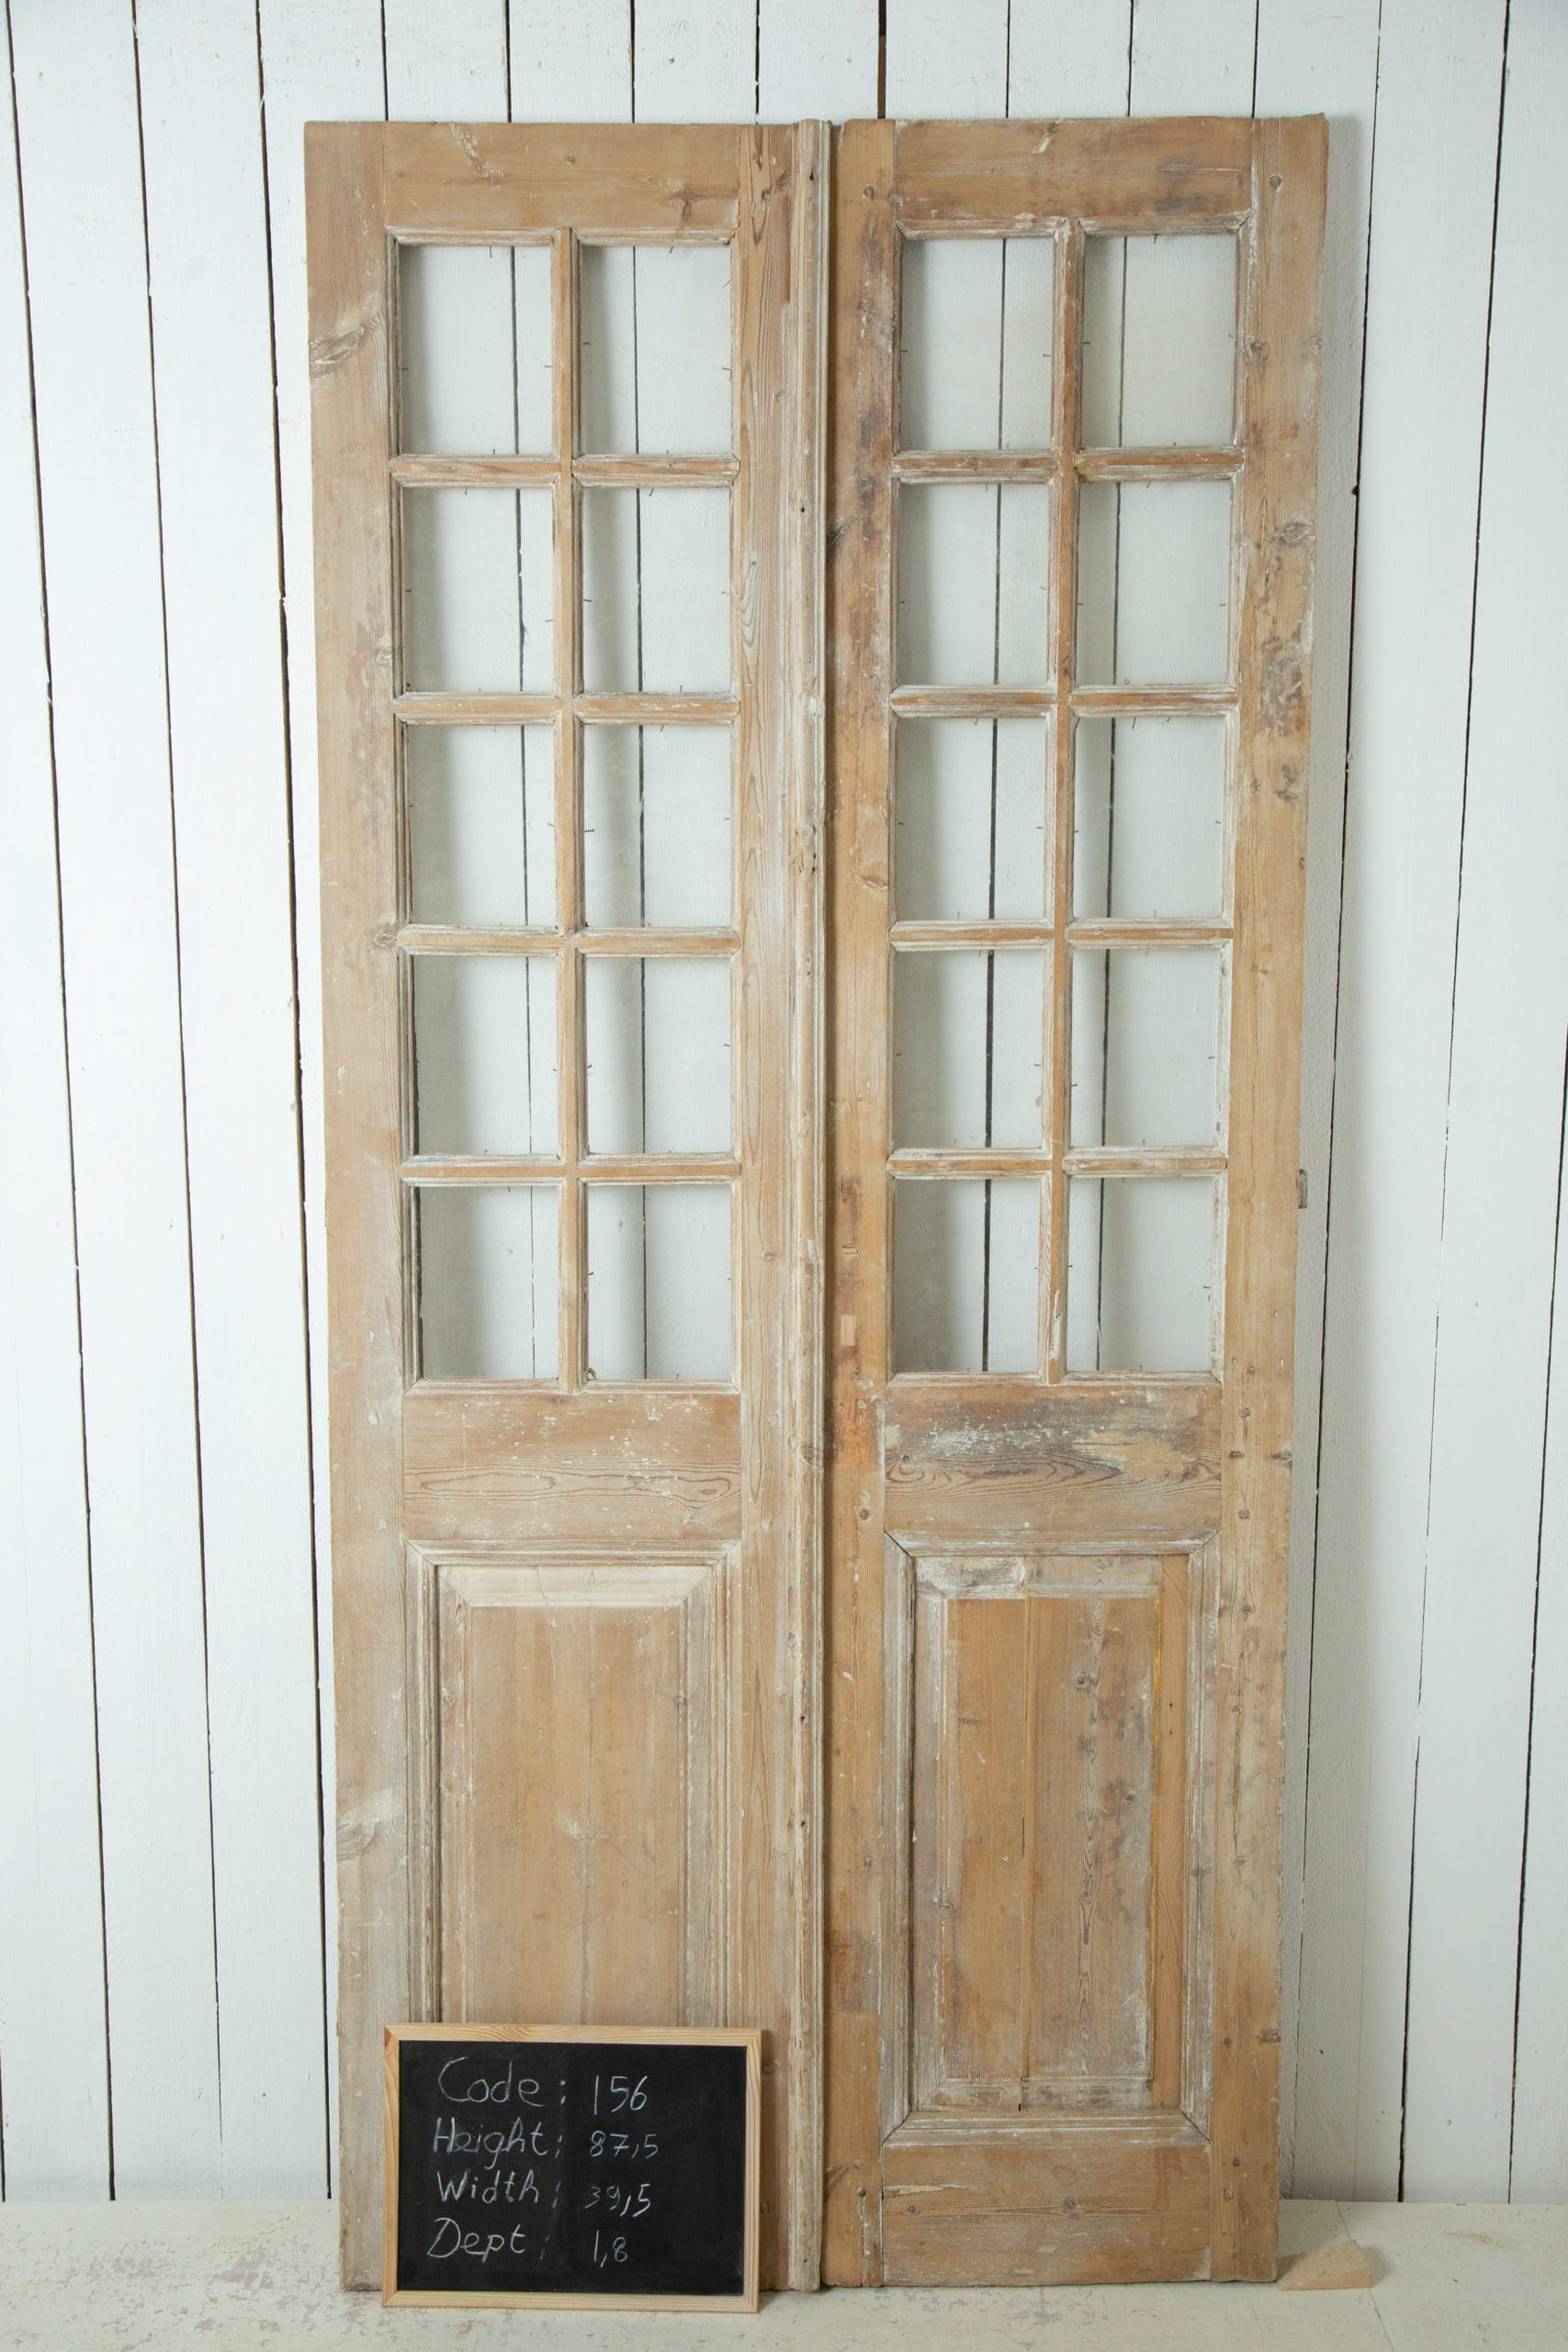 Farmhouse Door, Masterpiece Doors